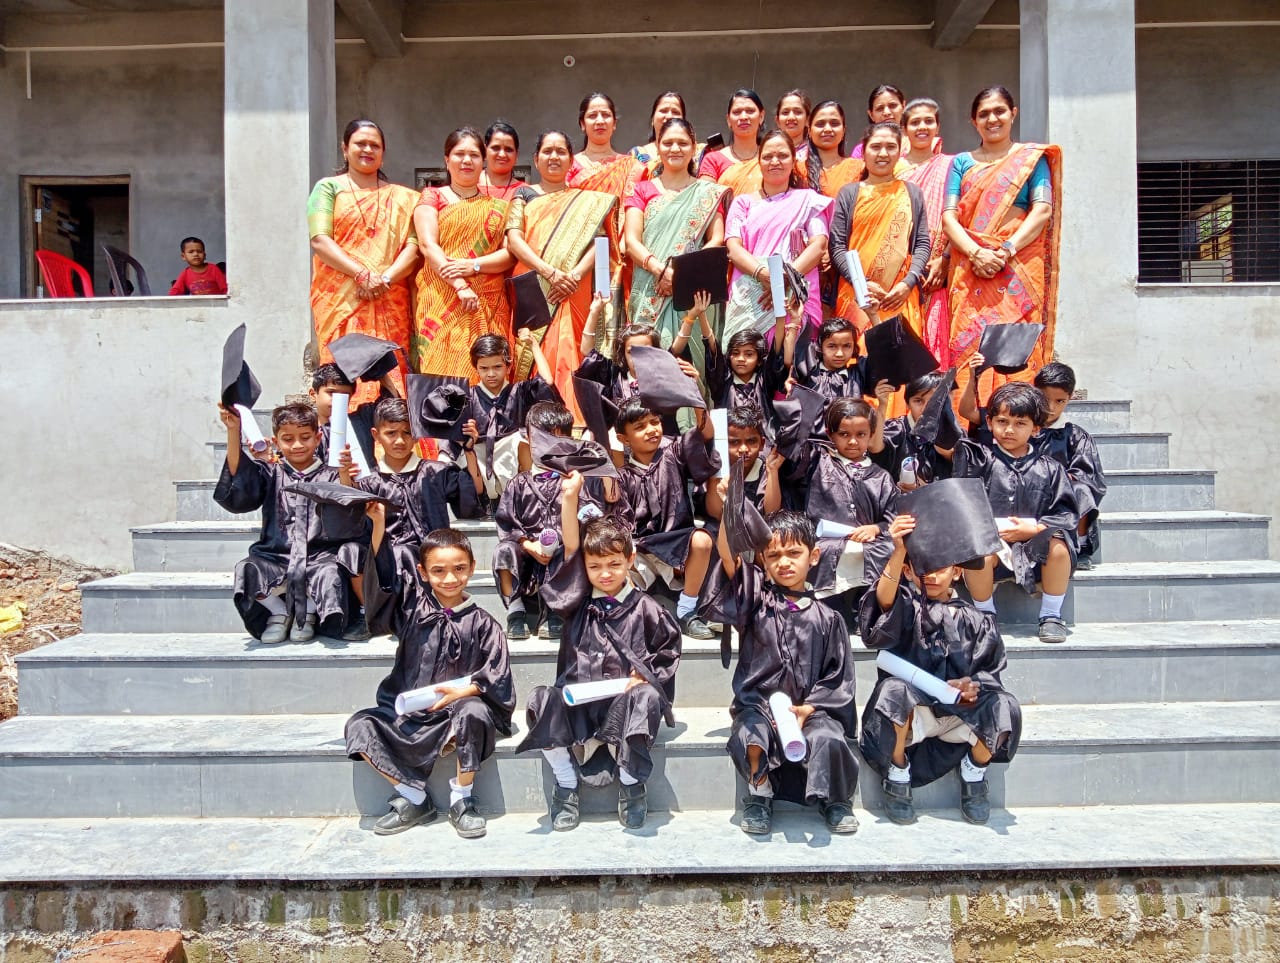 प्रचिती पब्लिक स्कूल पिंपळनेर मध्ये 'ग्रज्यूएशन डे' (पदवी दिवस) उत्साहात साजरा